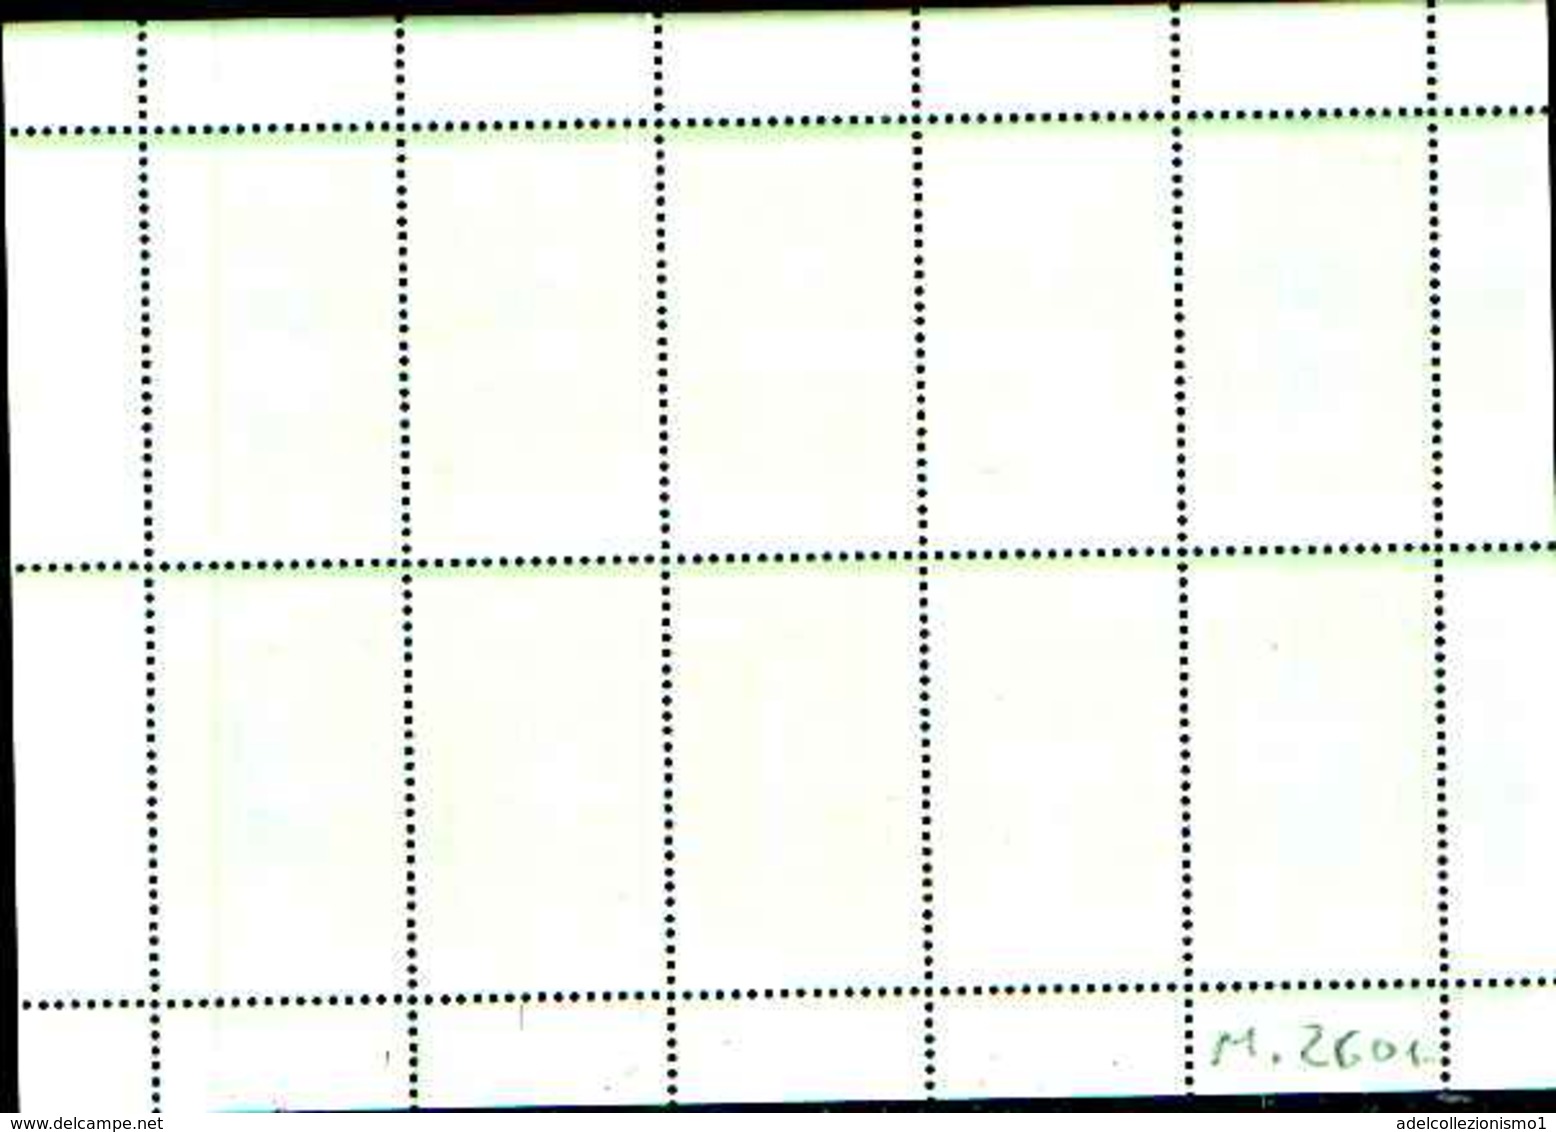 72263 ) LOTTO DI  FRANCOBOLLI DELLA -DDR -1981- N. 2601 ** RISPARMIO ENERGETICO FOGLIETTO DI 10 F. MNH++ - 1st Day – FDC (sheets)